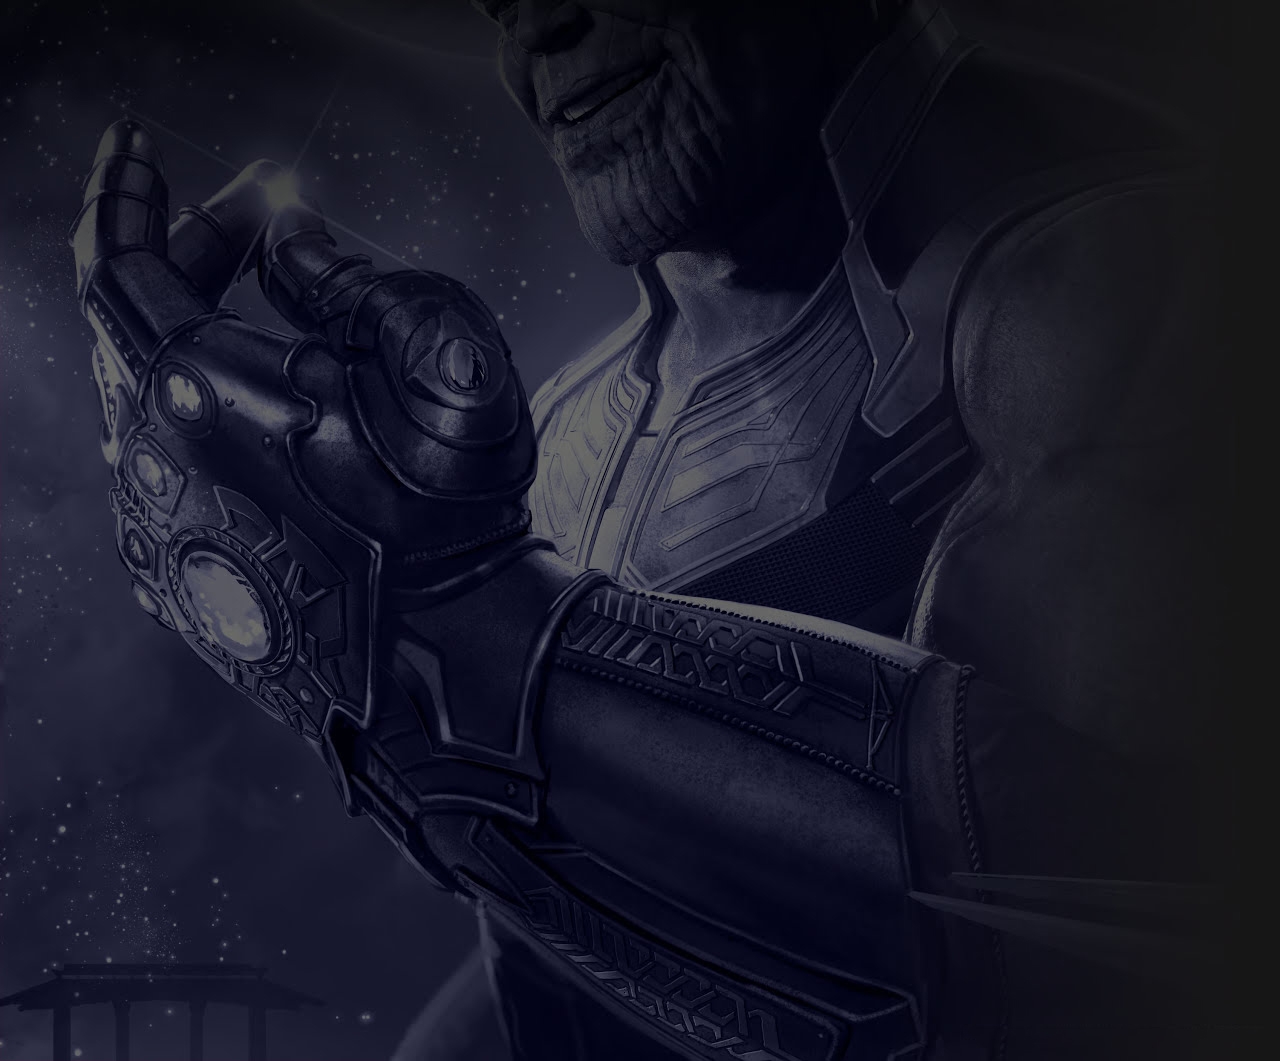 The Art of Marvel's Avengers Infinity War 1